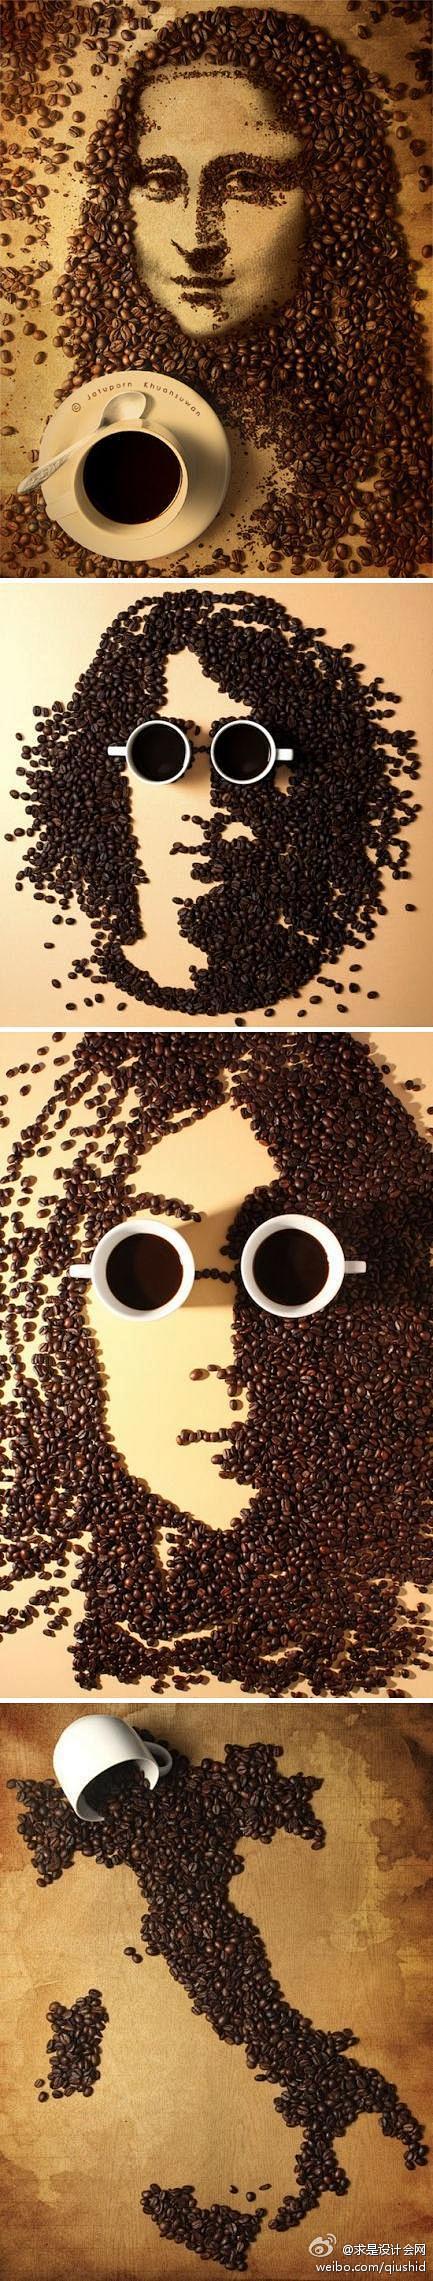 求是设计会网咖啡豆人物画像，泰国摄影师J...